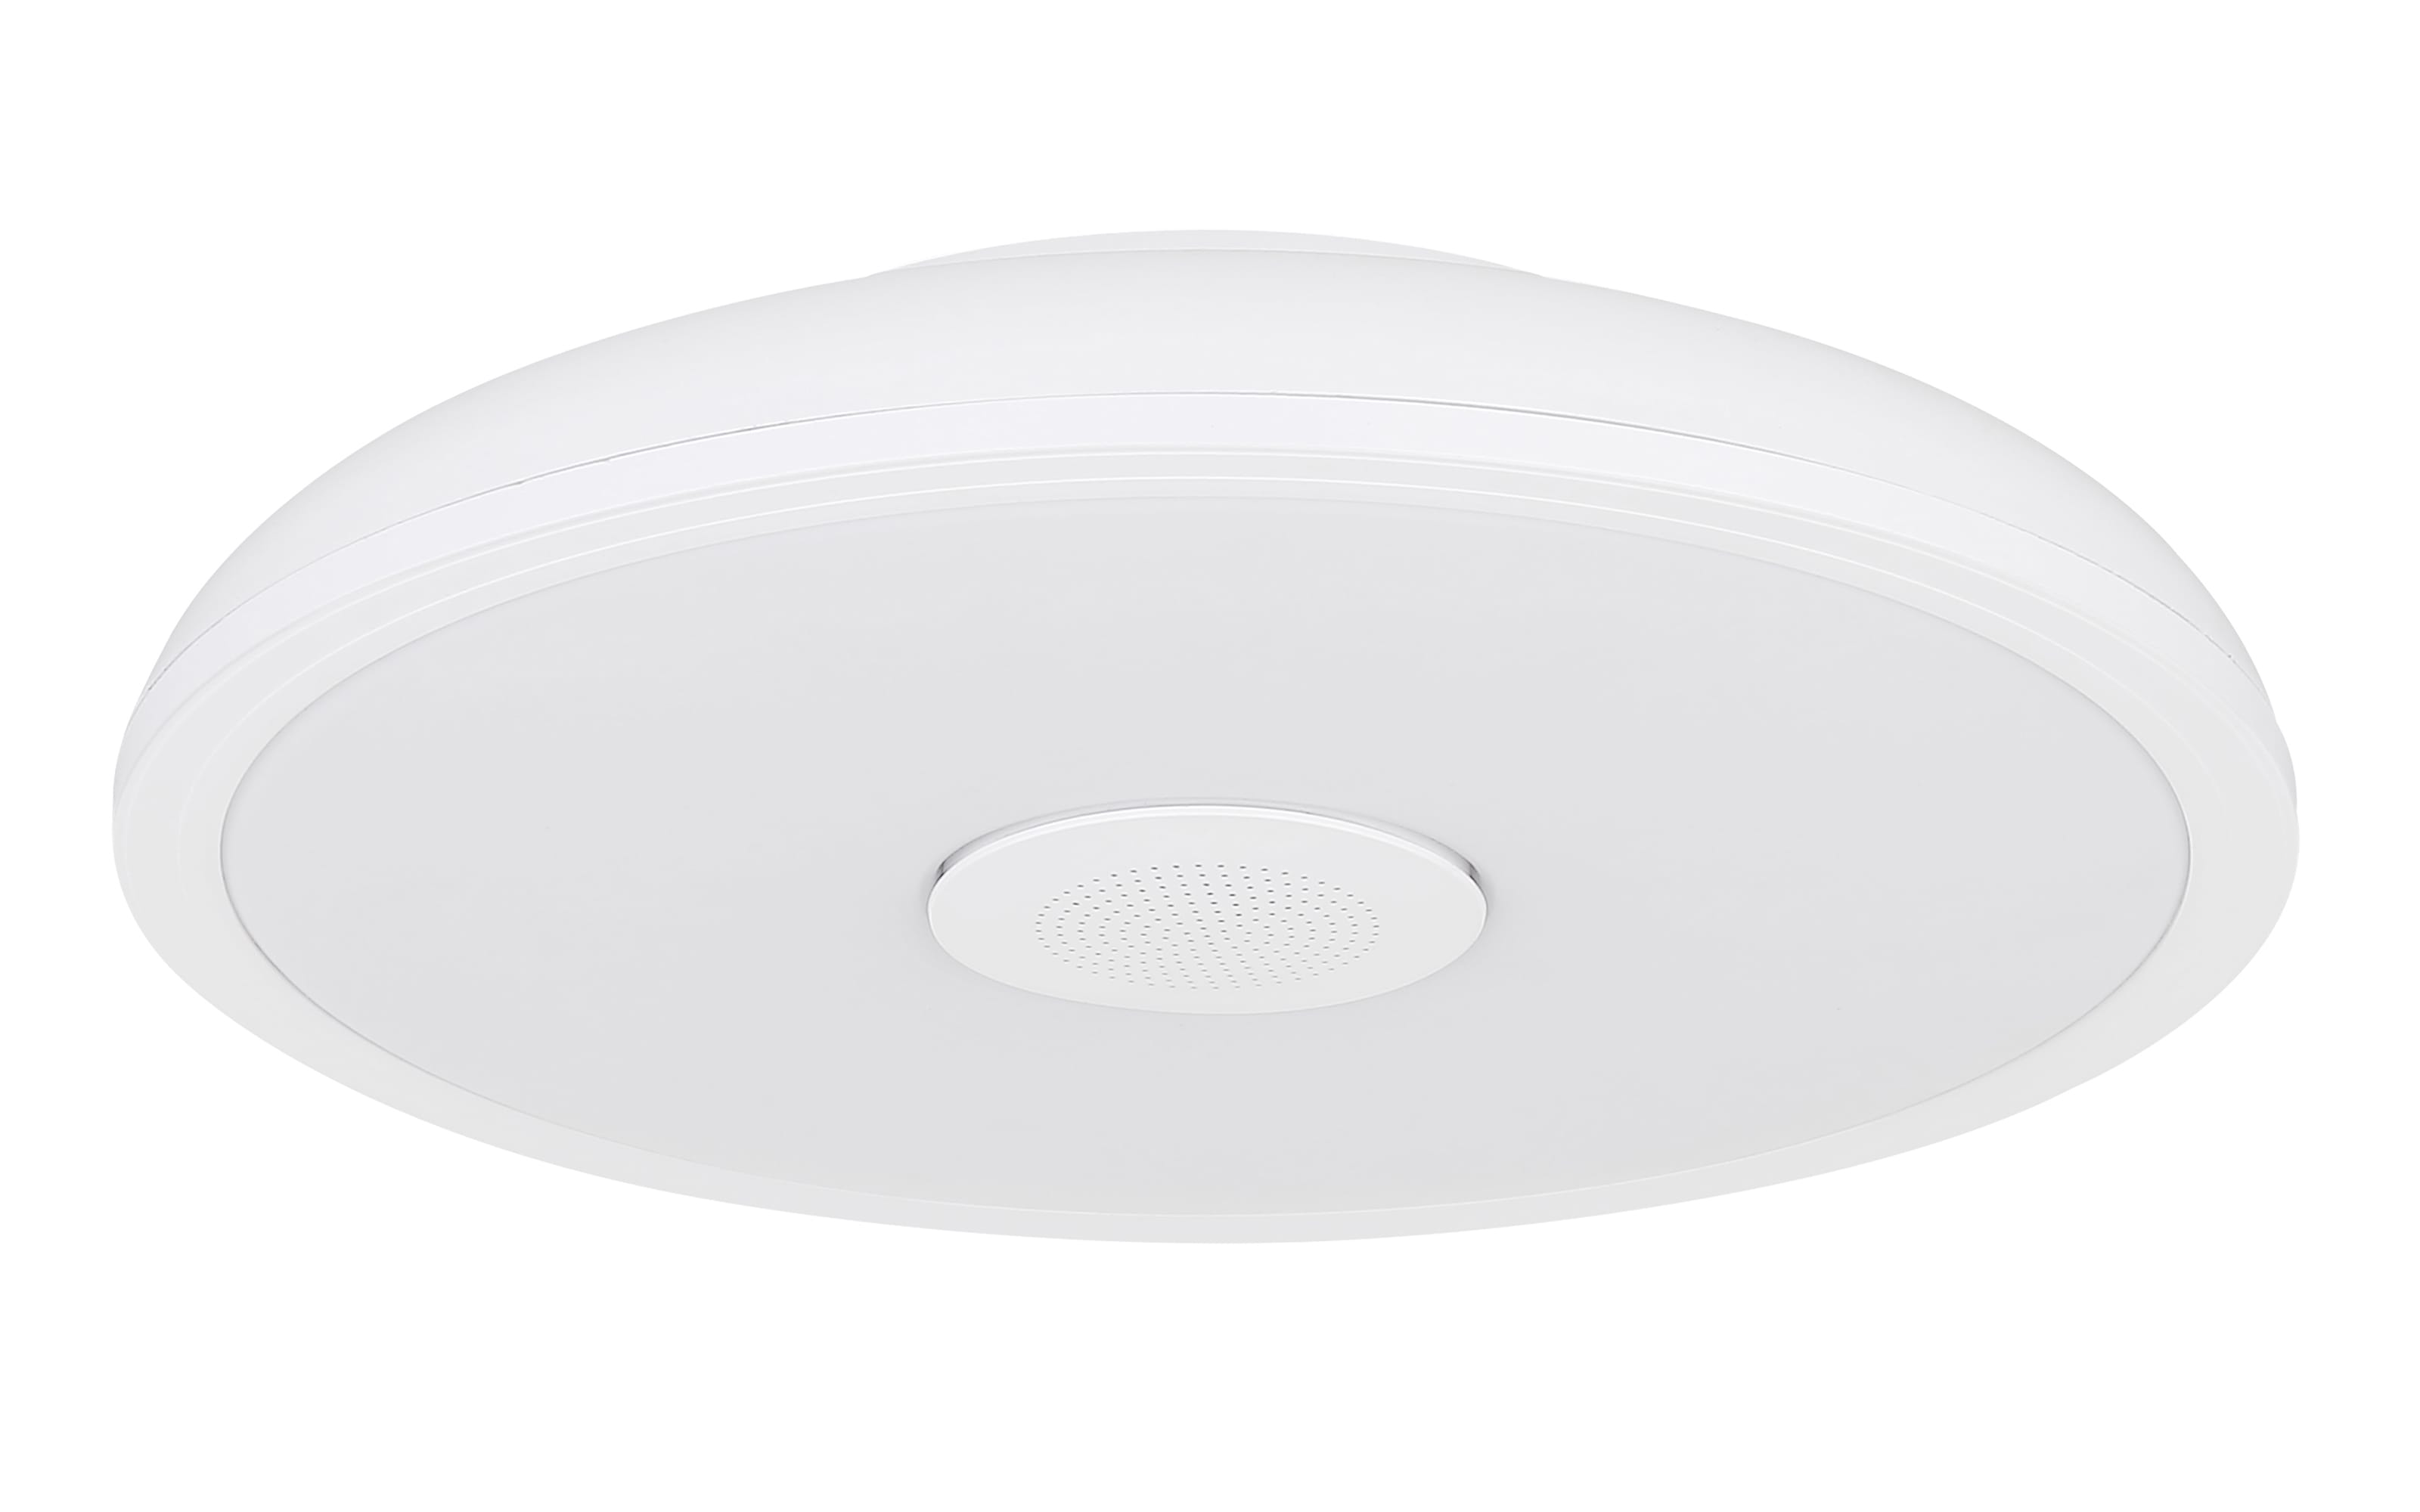 LED-Lautsprecher-Deckenleuchte Raffy RGB IP44 in weiß, 28 cm